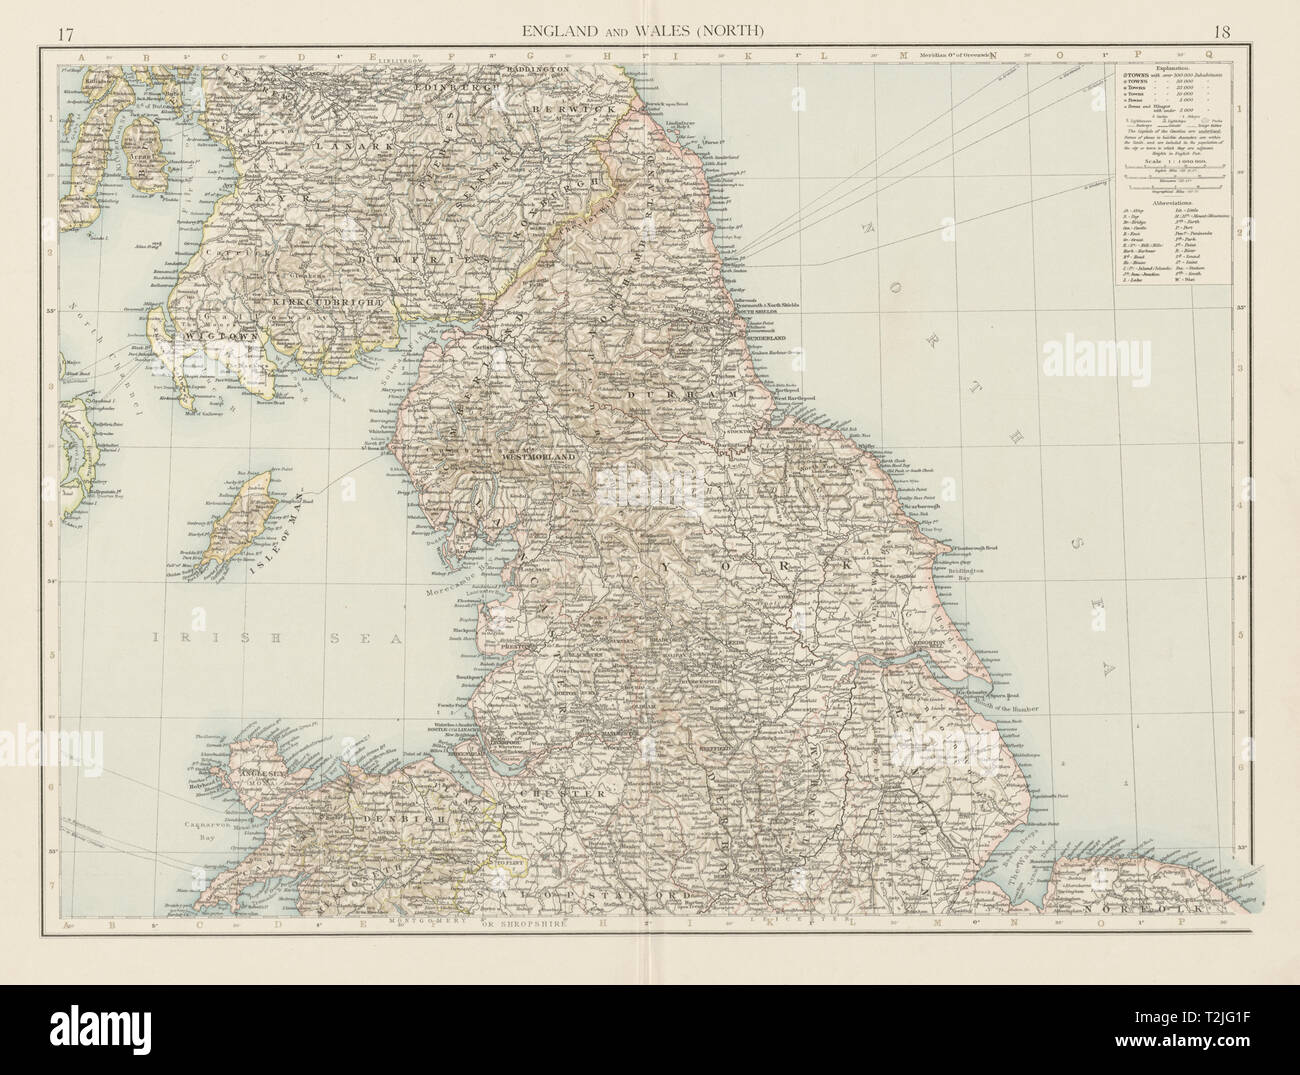 Angleterre et Pays de Galles (Nord). La fois 1900 ancienne carte graphique plan vintage Banque D'Images